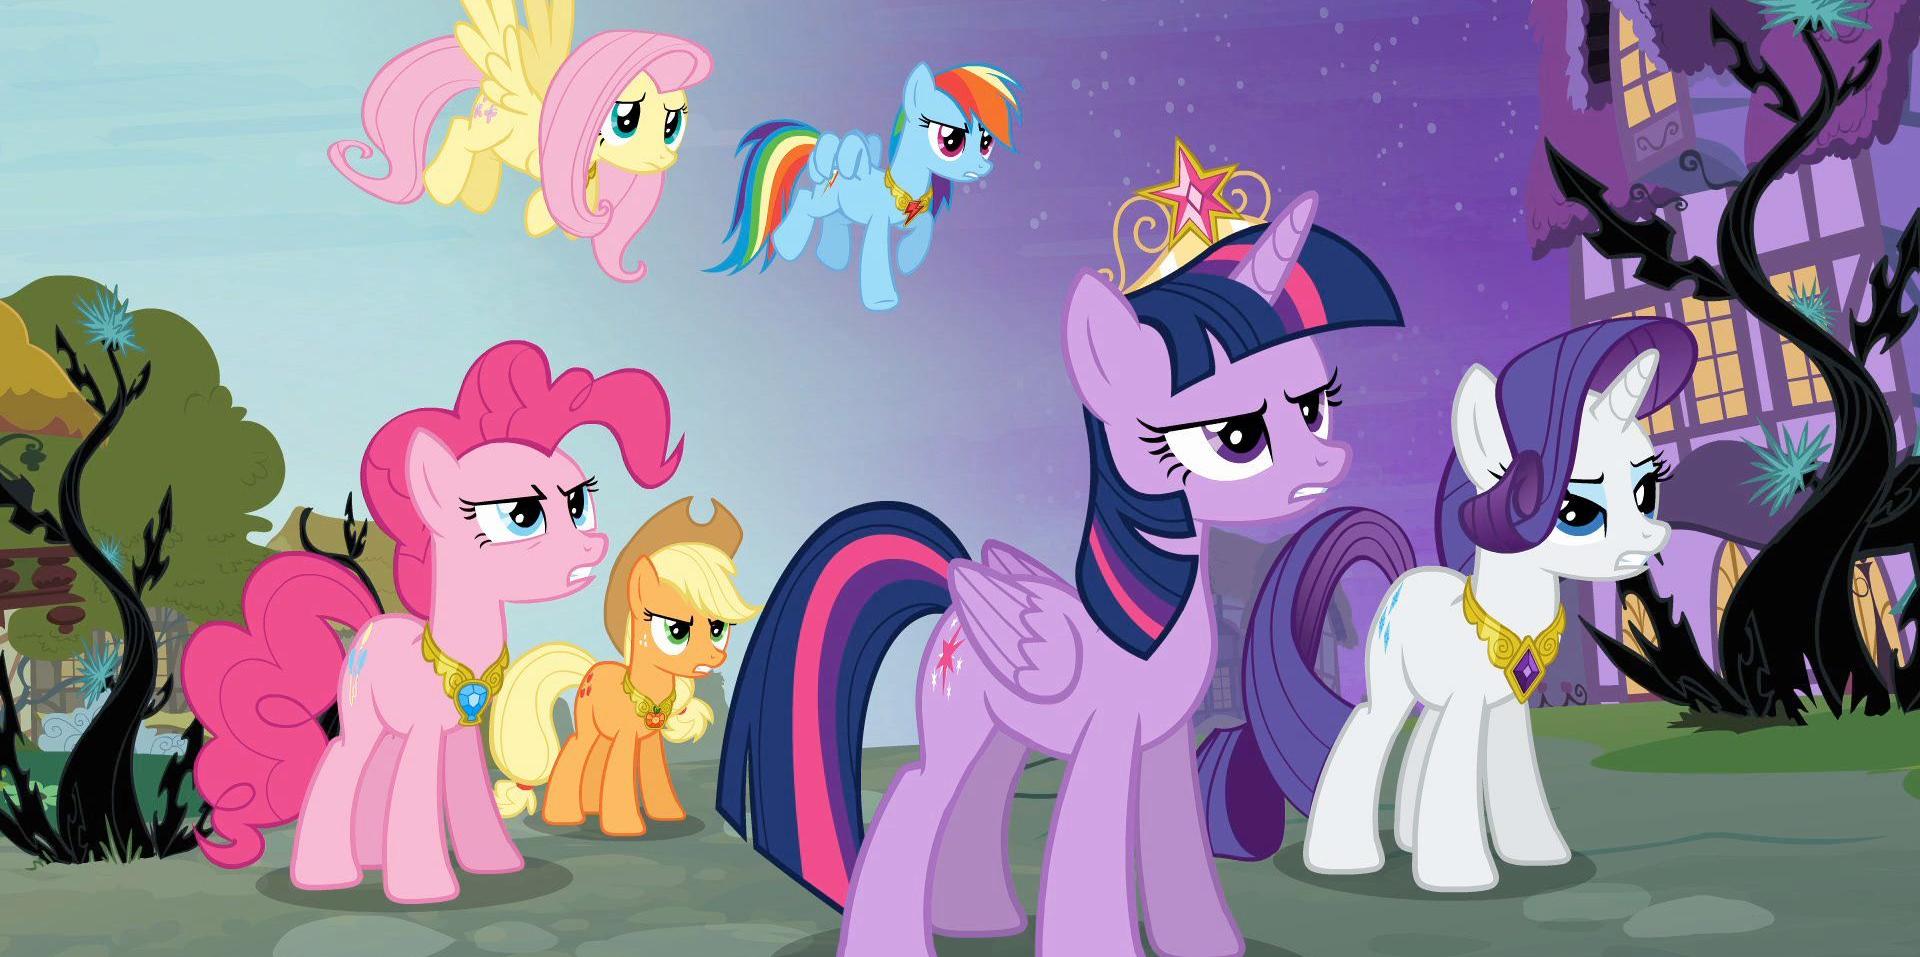 Xem phim My Little Pony Friendship is Magic SS4 - My Little Pony: Friendship Is Magic Season 4 | Bé Pony Của Em: Tình Bạn Là Phép Màu 4 Vietsub